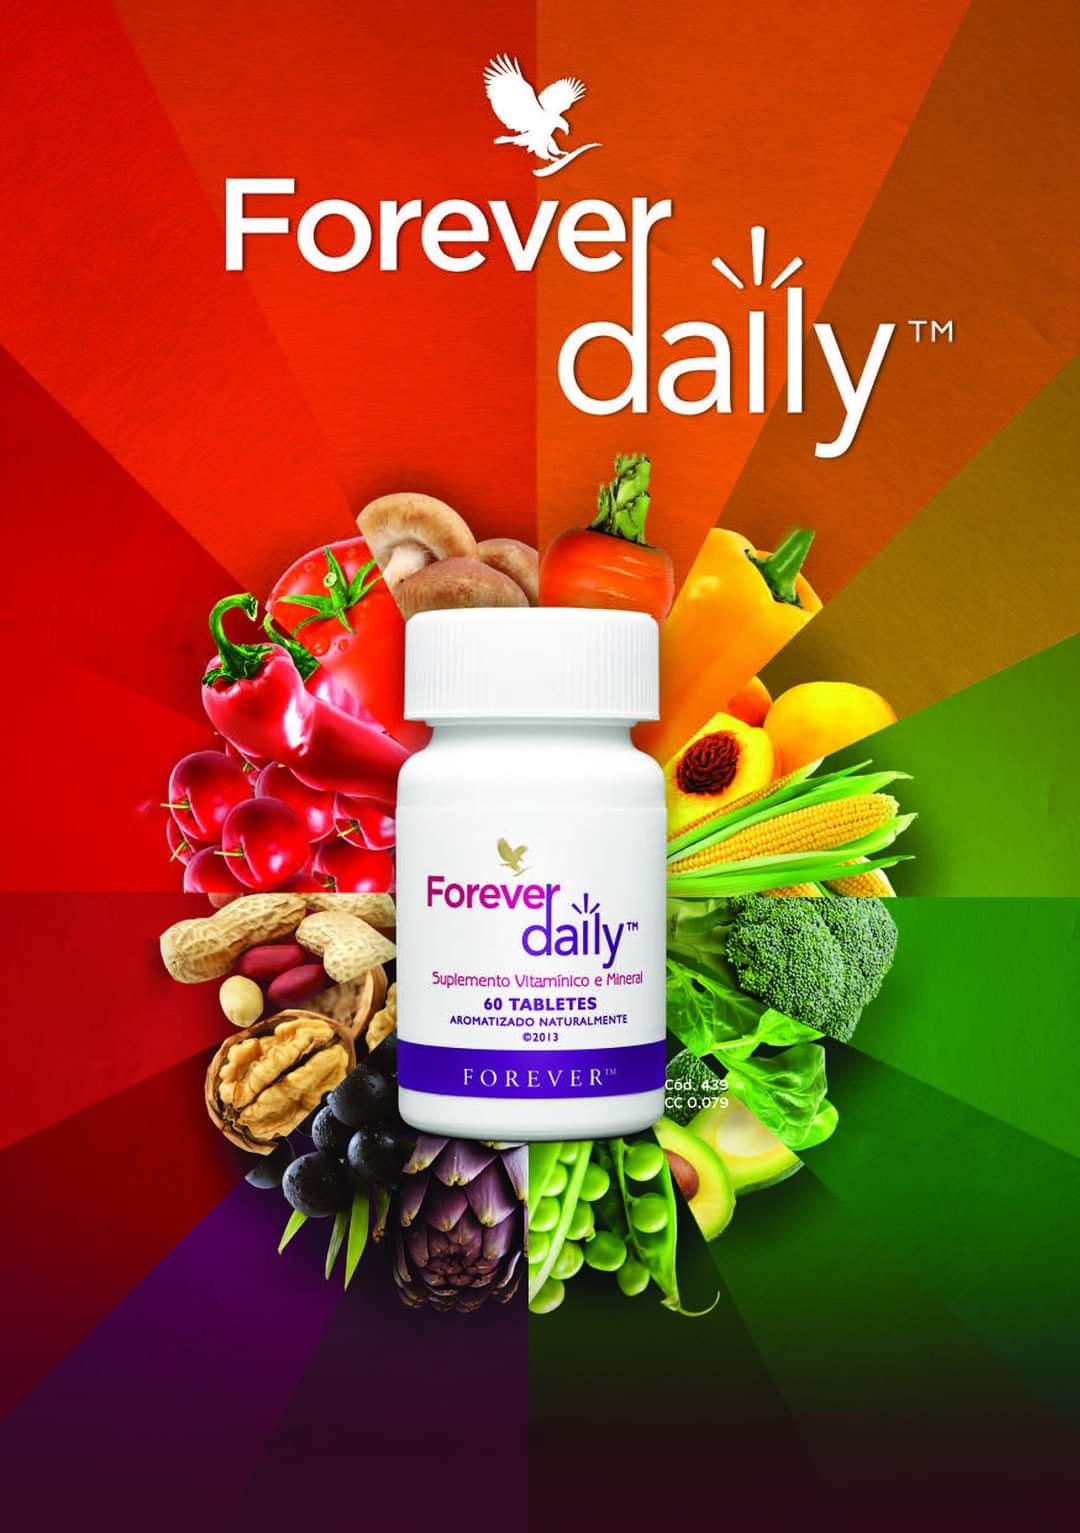 Forver Daily 439 Flp là sự kết hợp 55 loại vitamin và khoáng chất từ các nguồn tự nhiên.